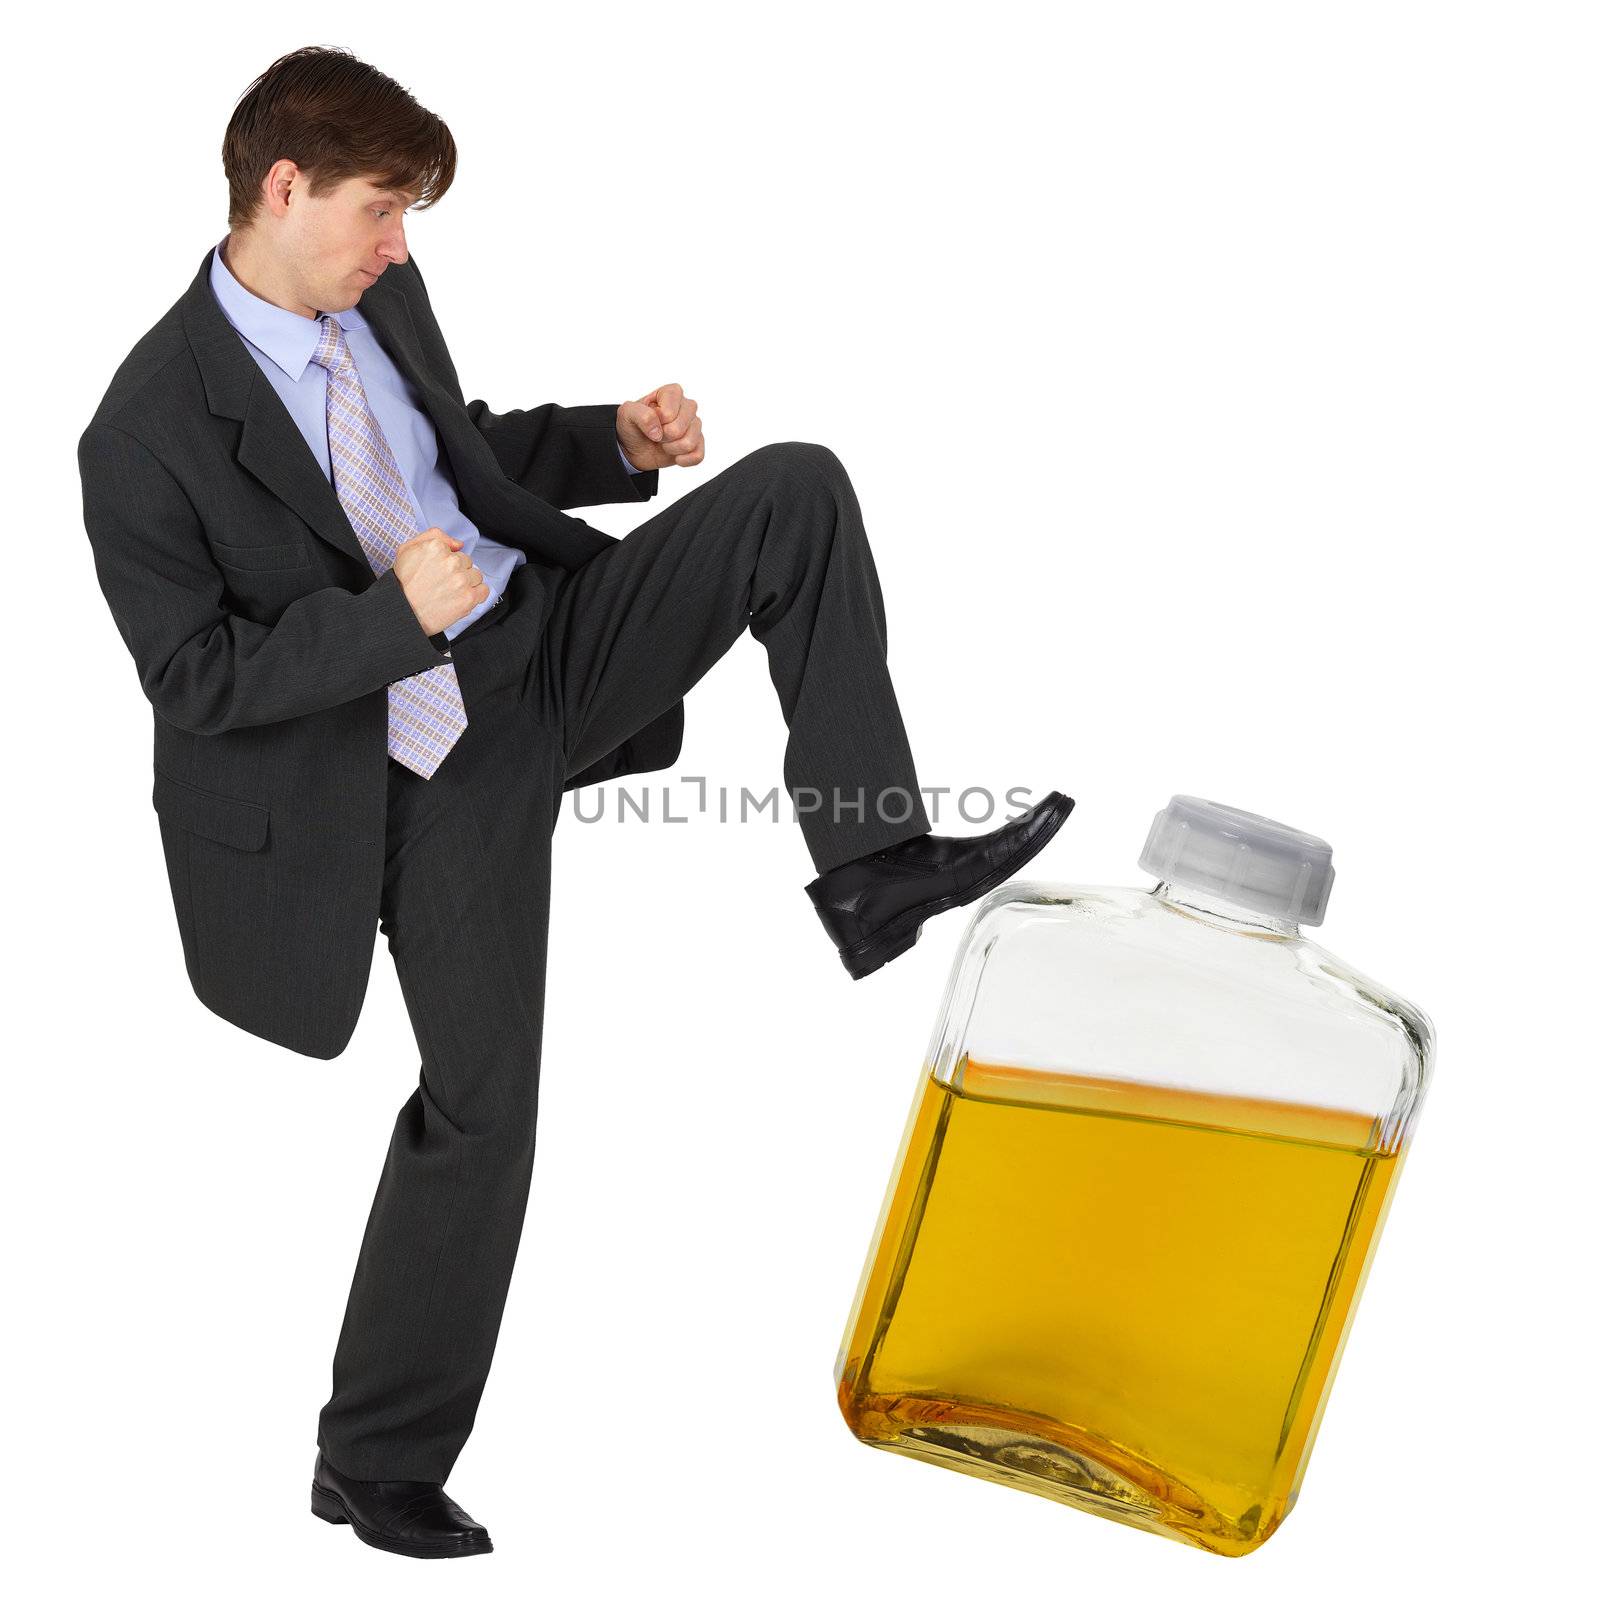 A man kicks a bottle of yellow liquid